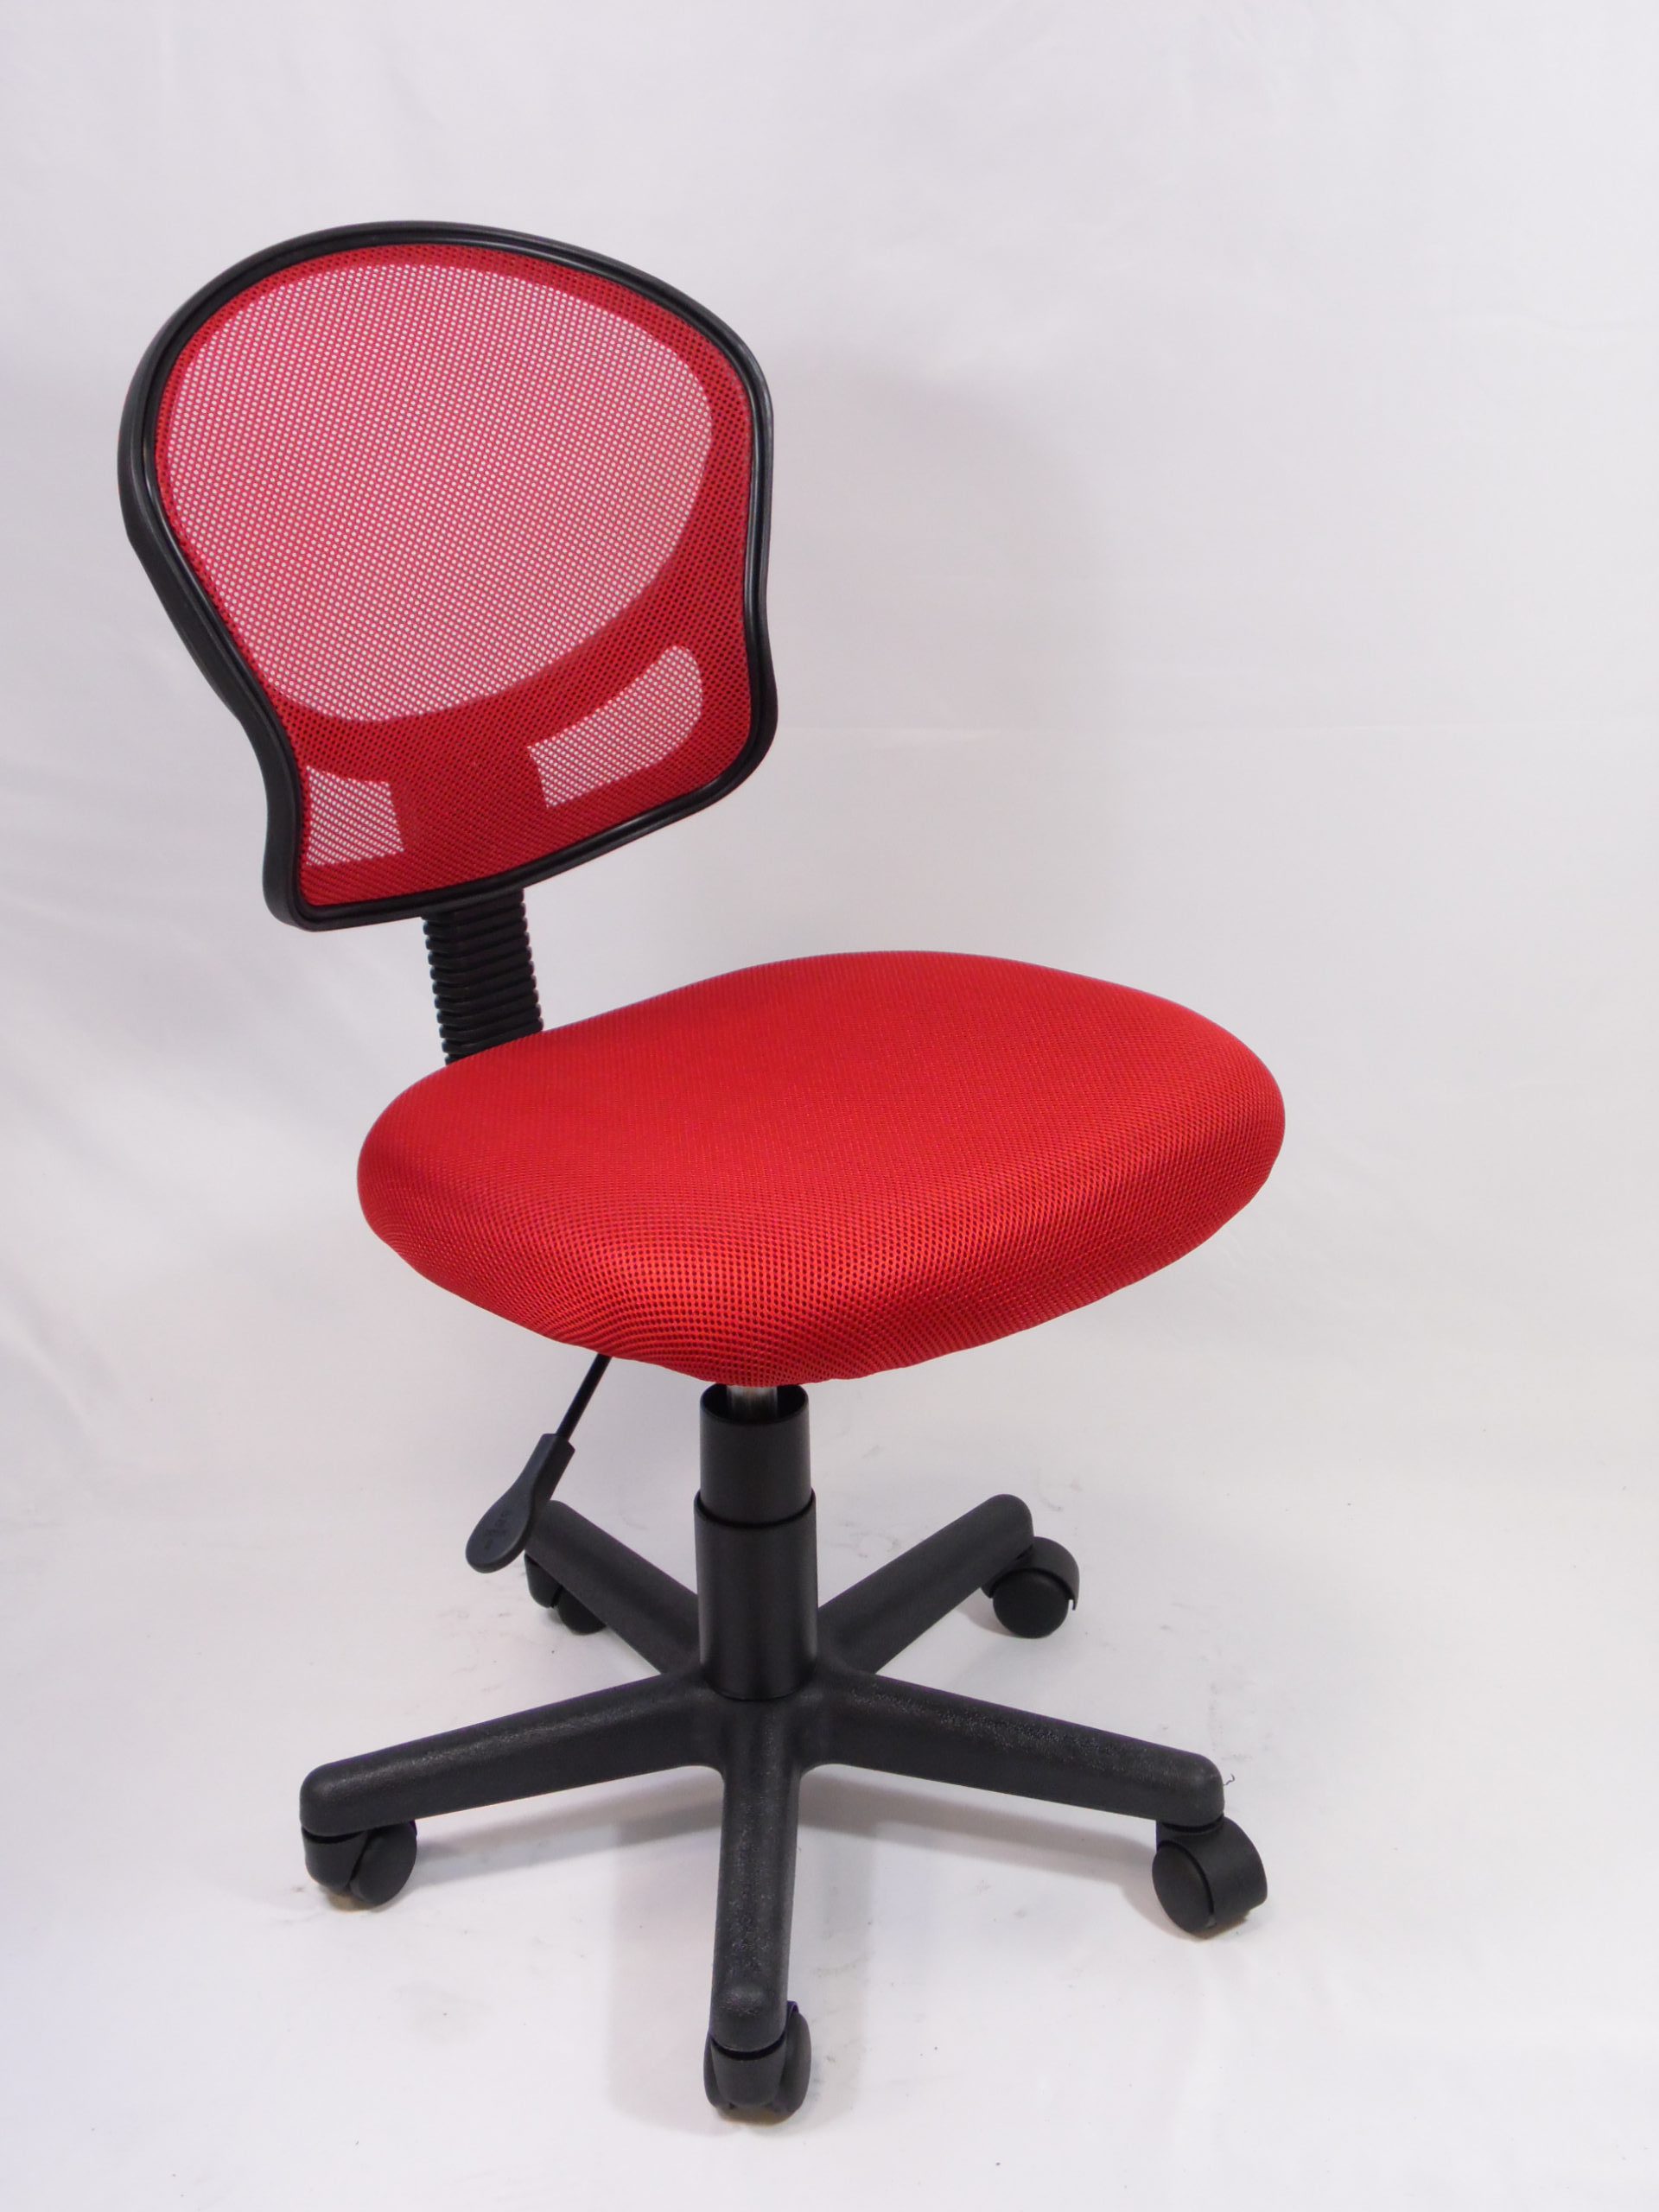 sedie per pc : h 88cm x d 53cm, h sedile 49cm x d sedile 50 cm; Materiale: plastica e tessuto color rosso